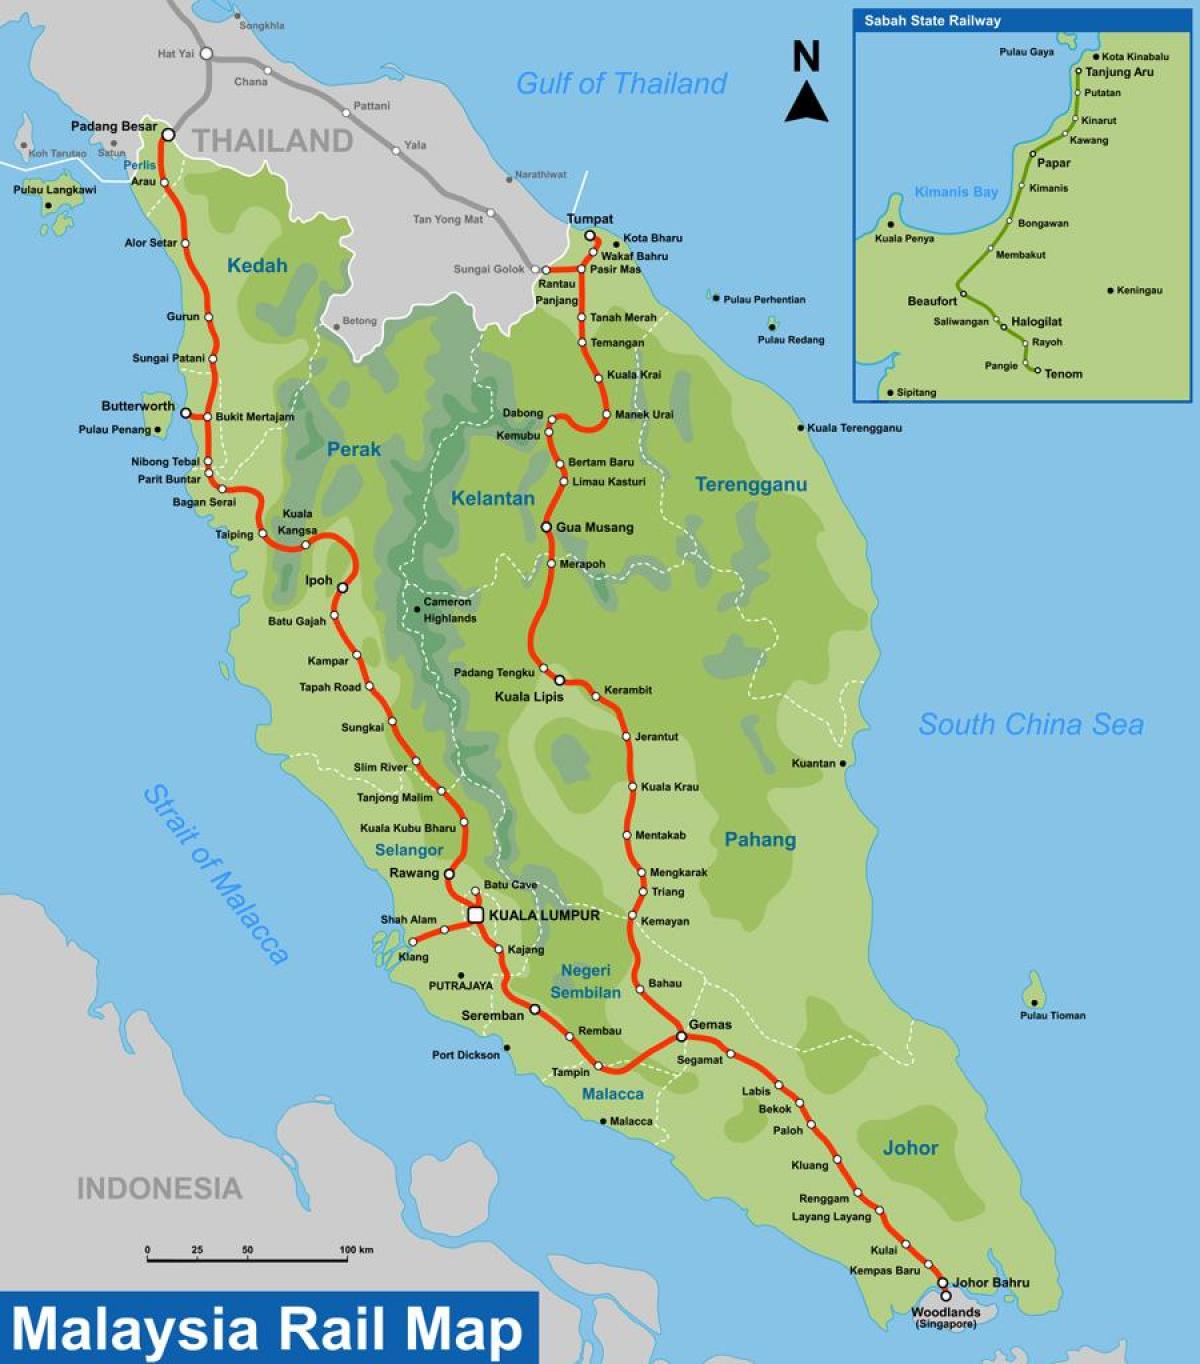 ktm замын газрын зураг нь малайз